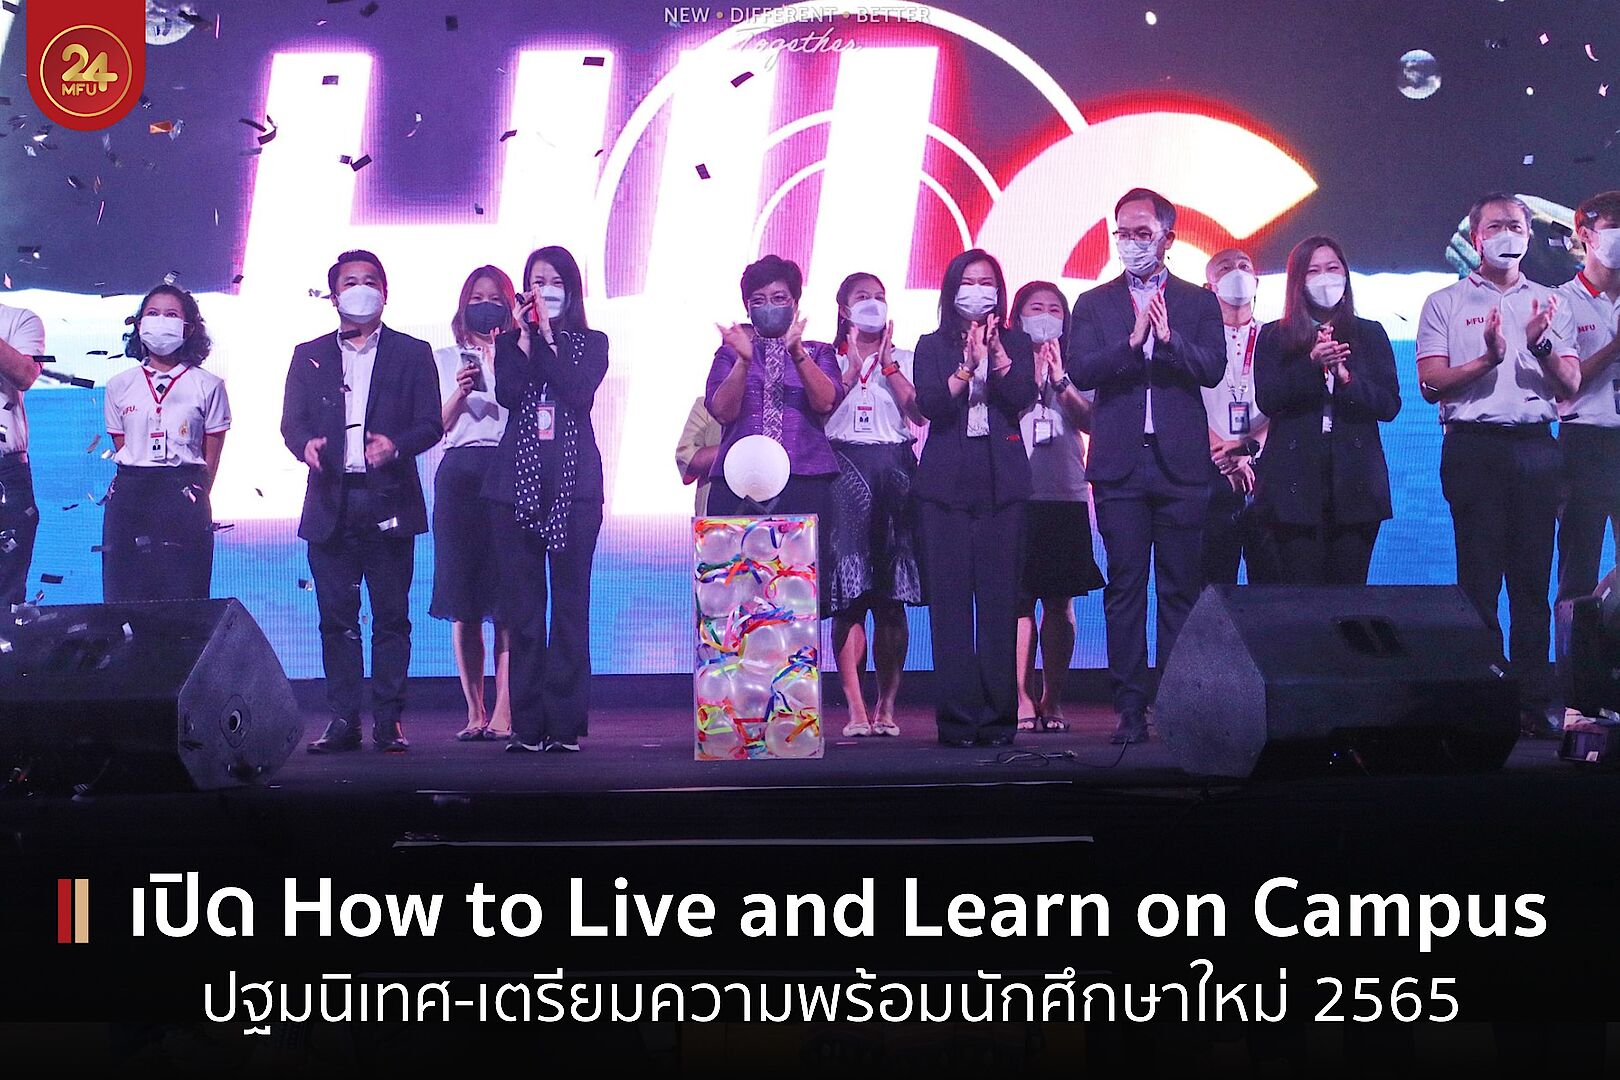 มฟล. เปิดกิจกรรม How to Live and Learn on Campus 2022 และปฐมนิเทศนักศึกษาใหม่ 2565